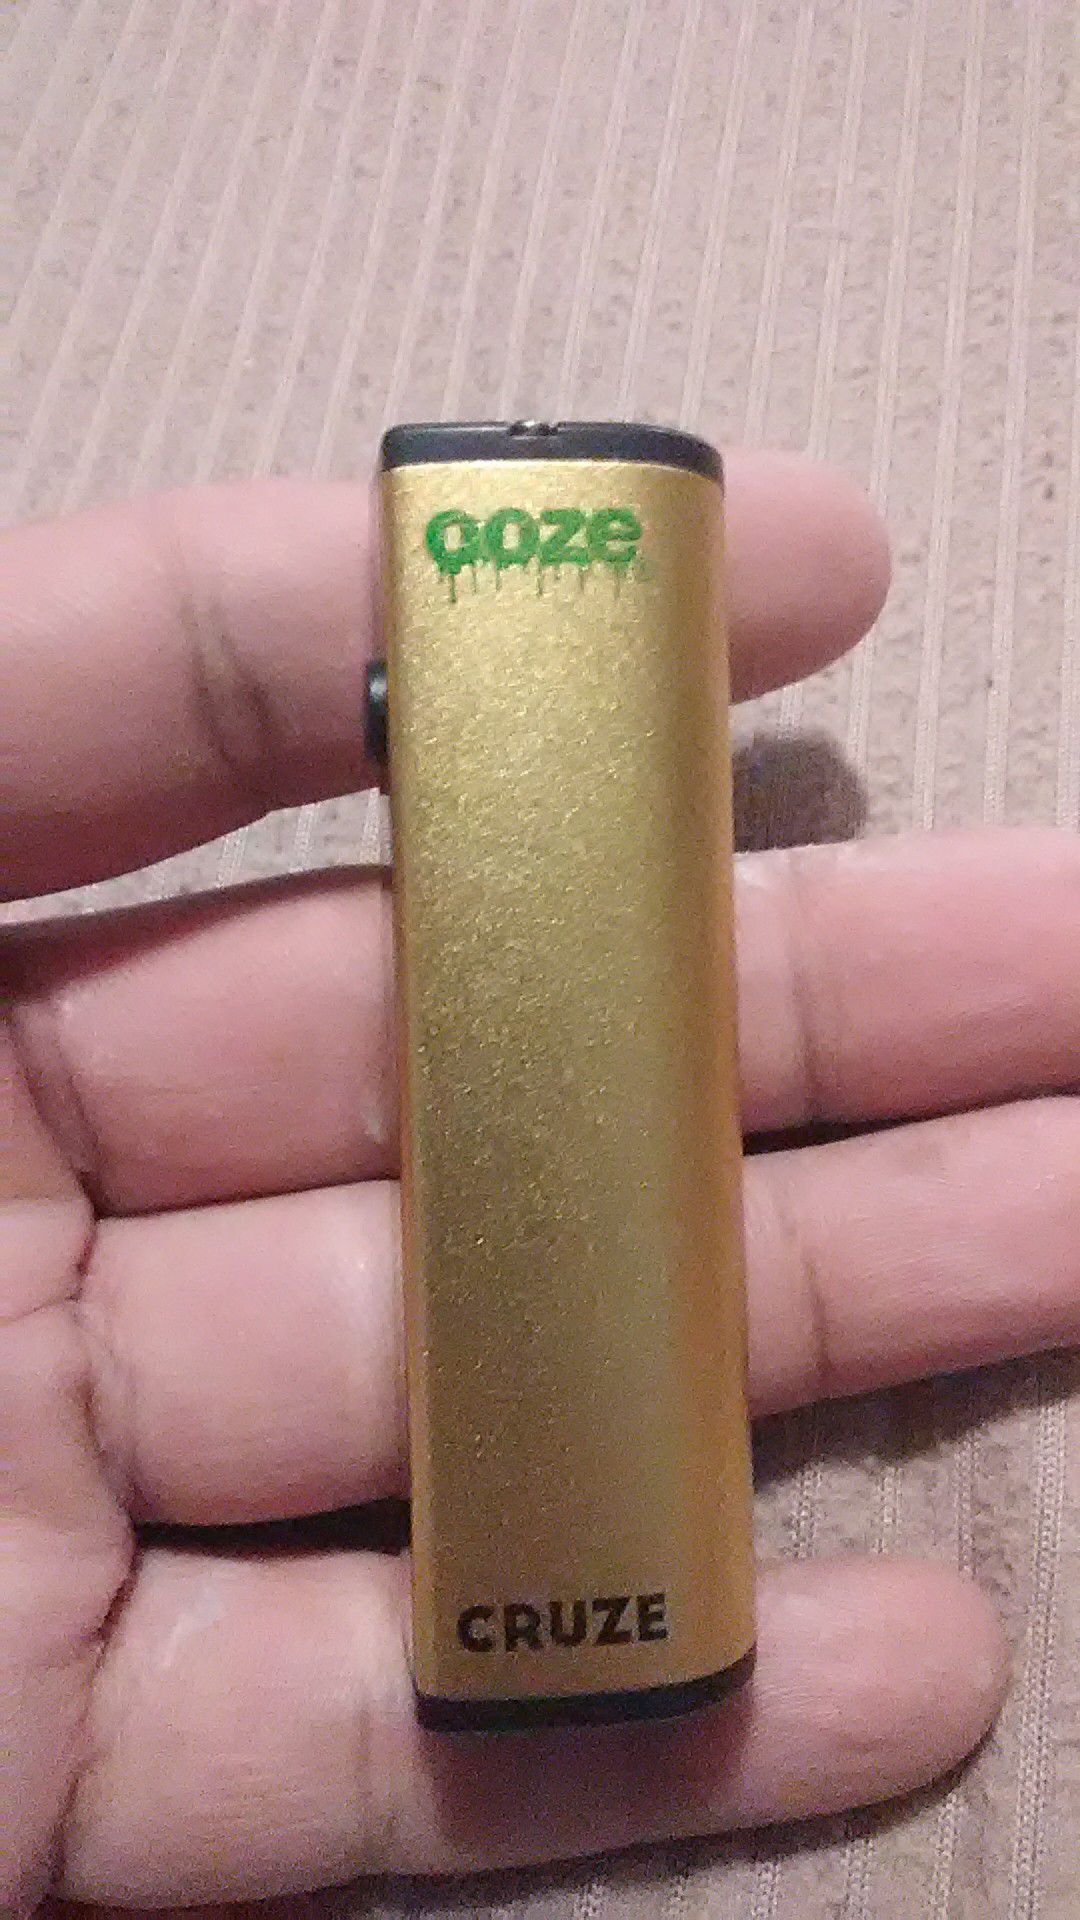 Ooze Cartridge Battery.